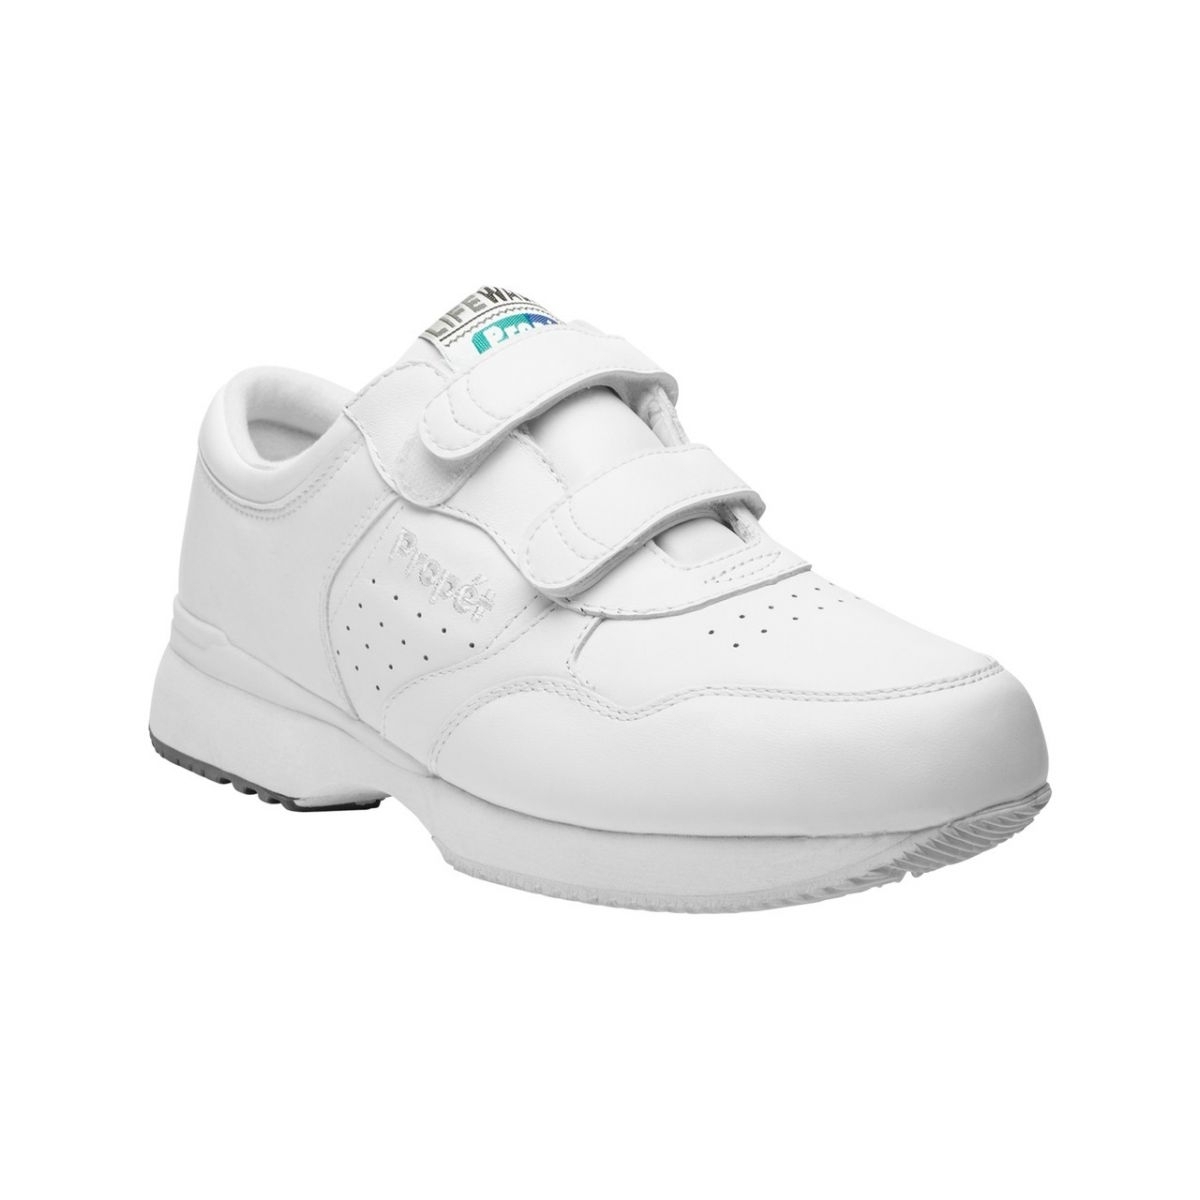 PropÃ©t Mens LifeWalker Strap Walking Walking Sneakers Athletic Shoes - Black 7 BLACK - WHITE, 10-3E